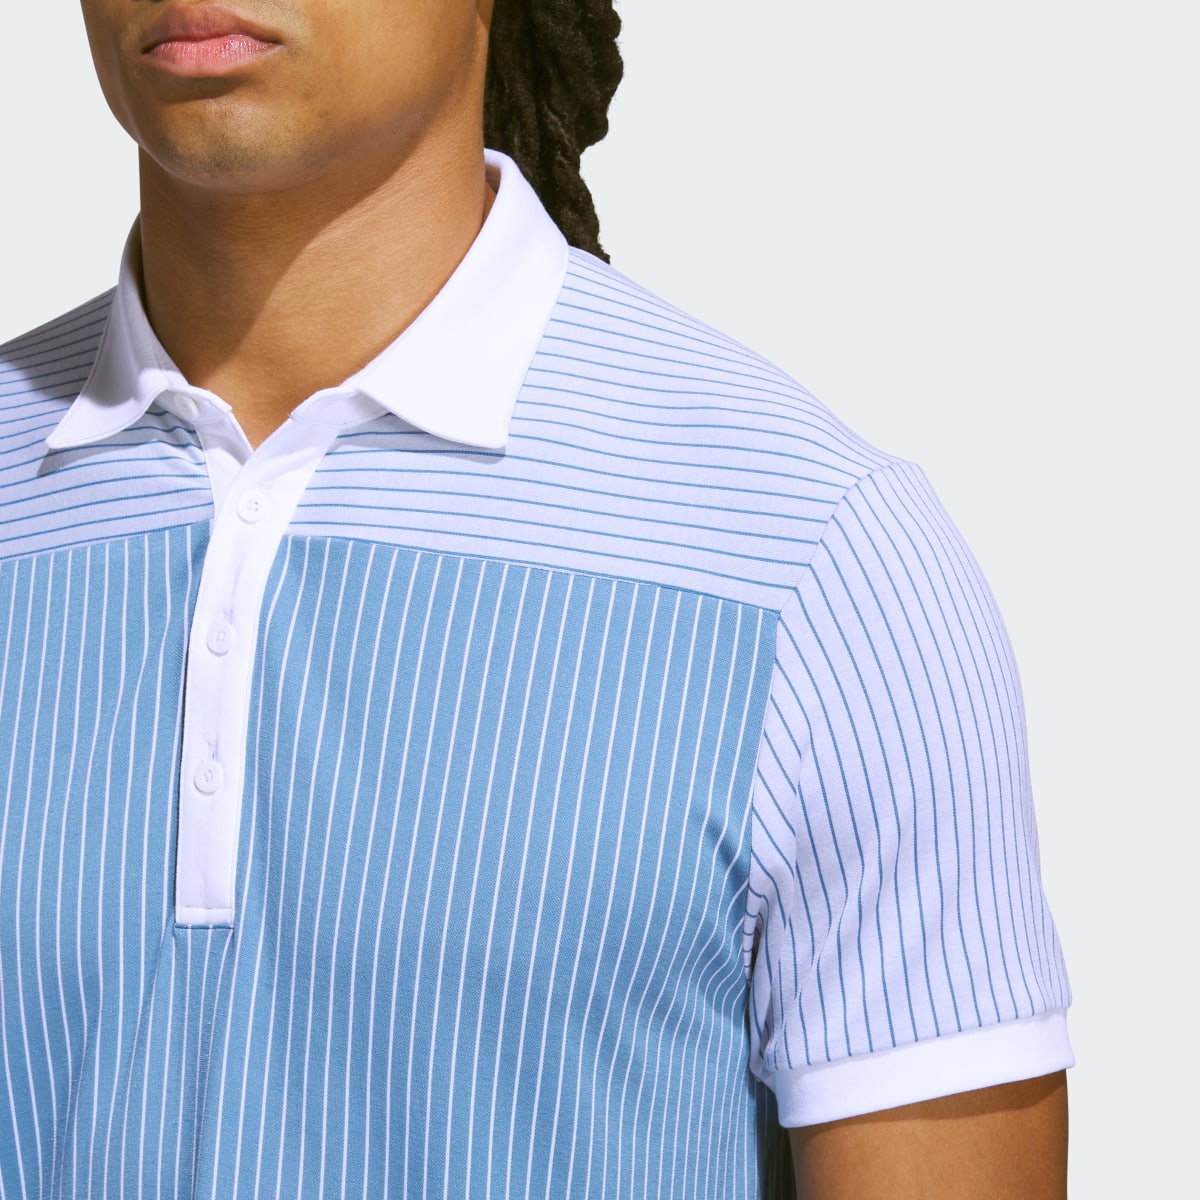 Adidas Bogey Boys Golf Polo Shirt. 8